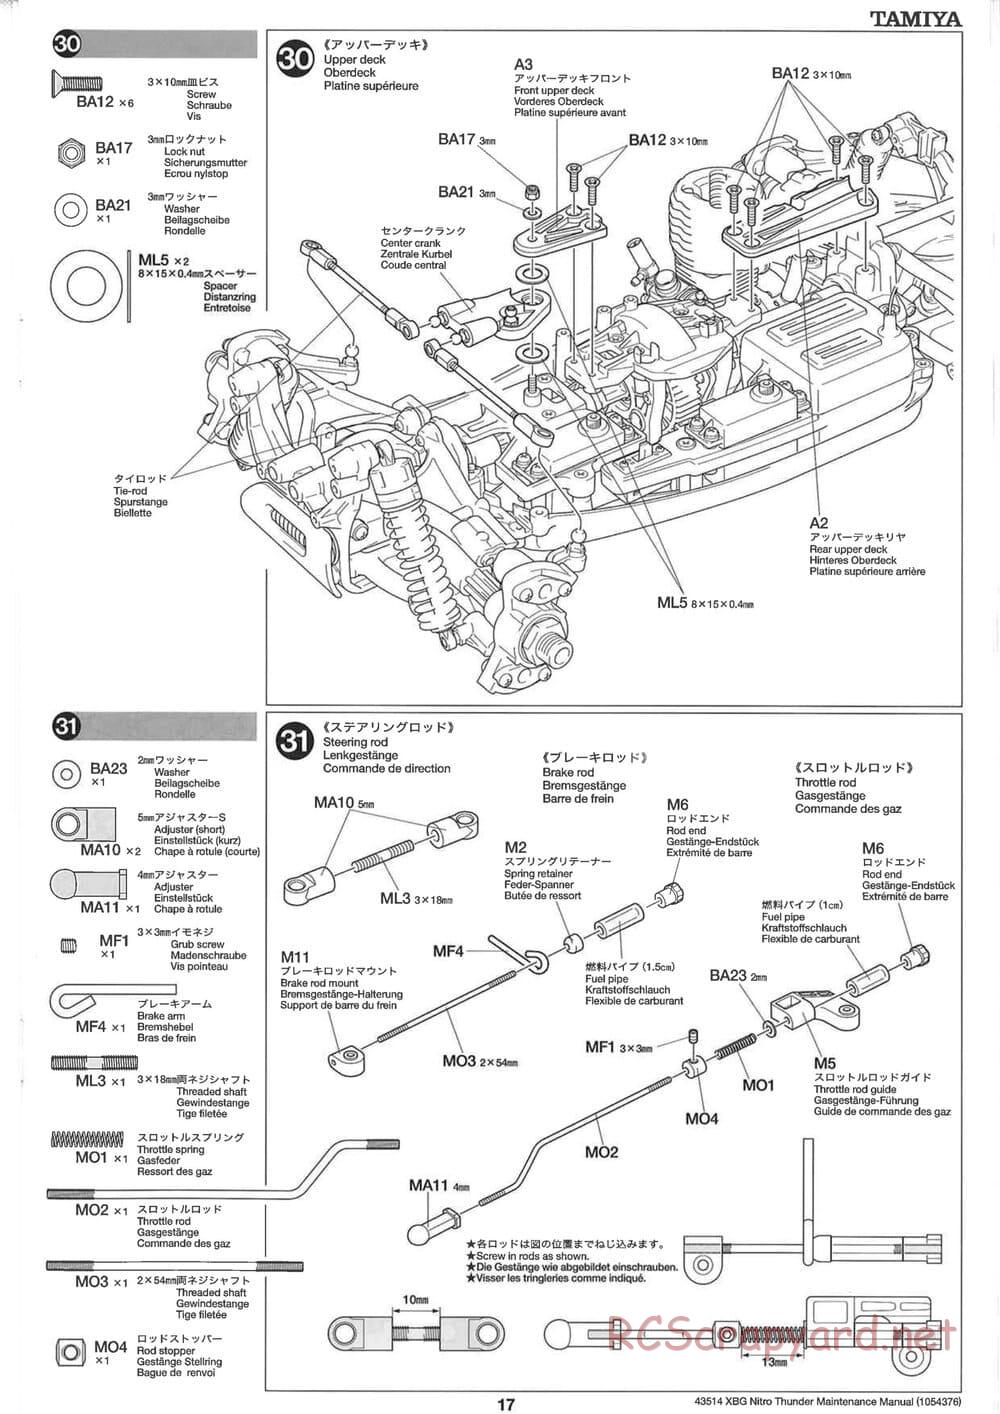 Tamiya - Nitro Thunder - NDF-01 Chassis - Manual - Page 17